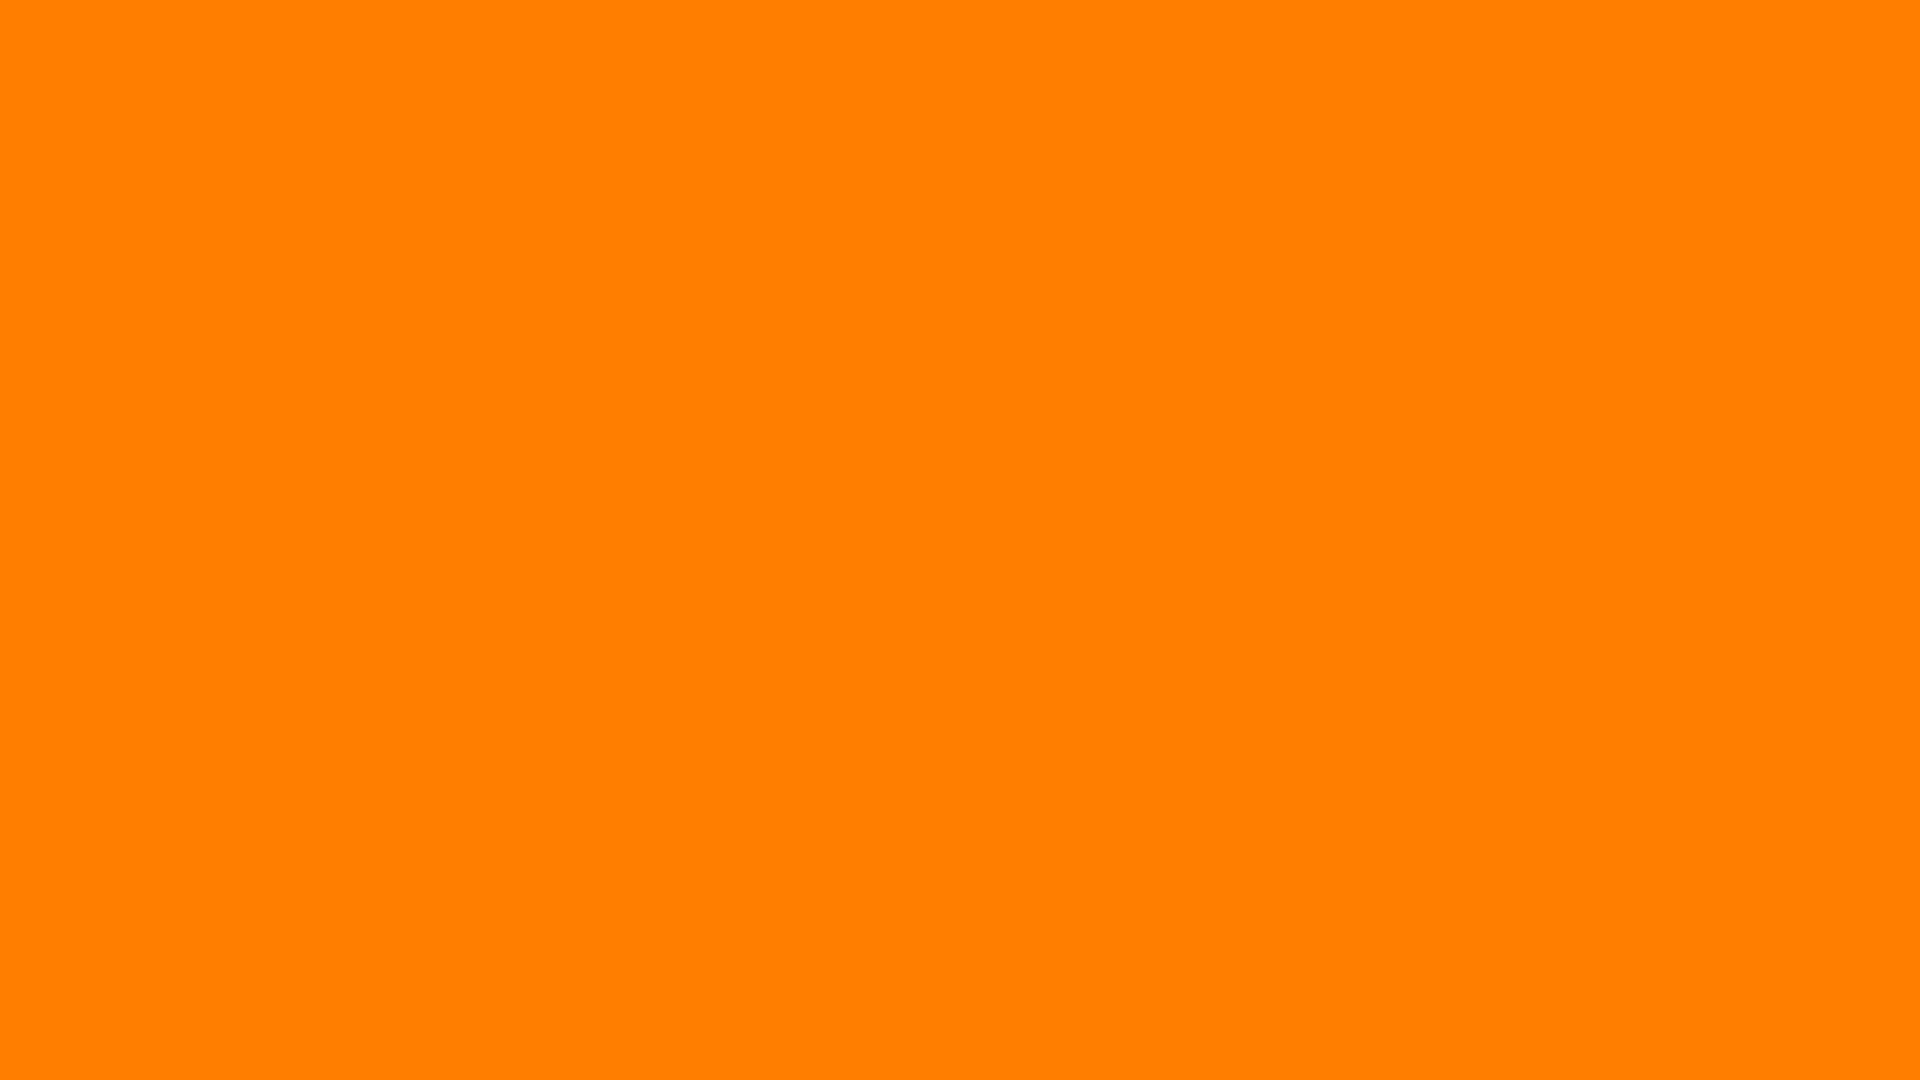 Nền màu cam đậm Amber là sự kết hợp giữa sự nổi bật và đẳng cấp. Màu sắc này trông rất sang trọng và đầy cá tính. Nếu bạn yêu thích màu cam, hãy thử trải nghiệm những hình ảnh đẹp với nền màu cam đậm Amber này để cảm nhận sự khác biệt.